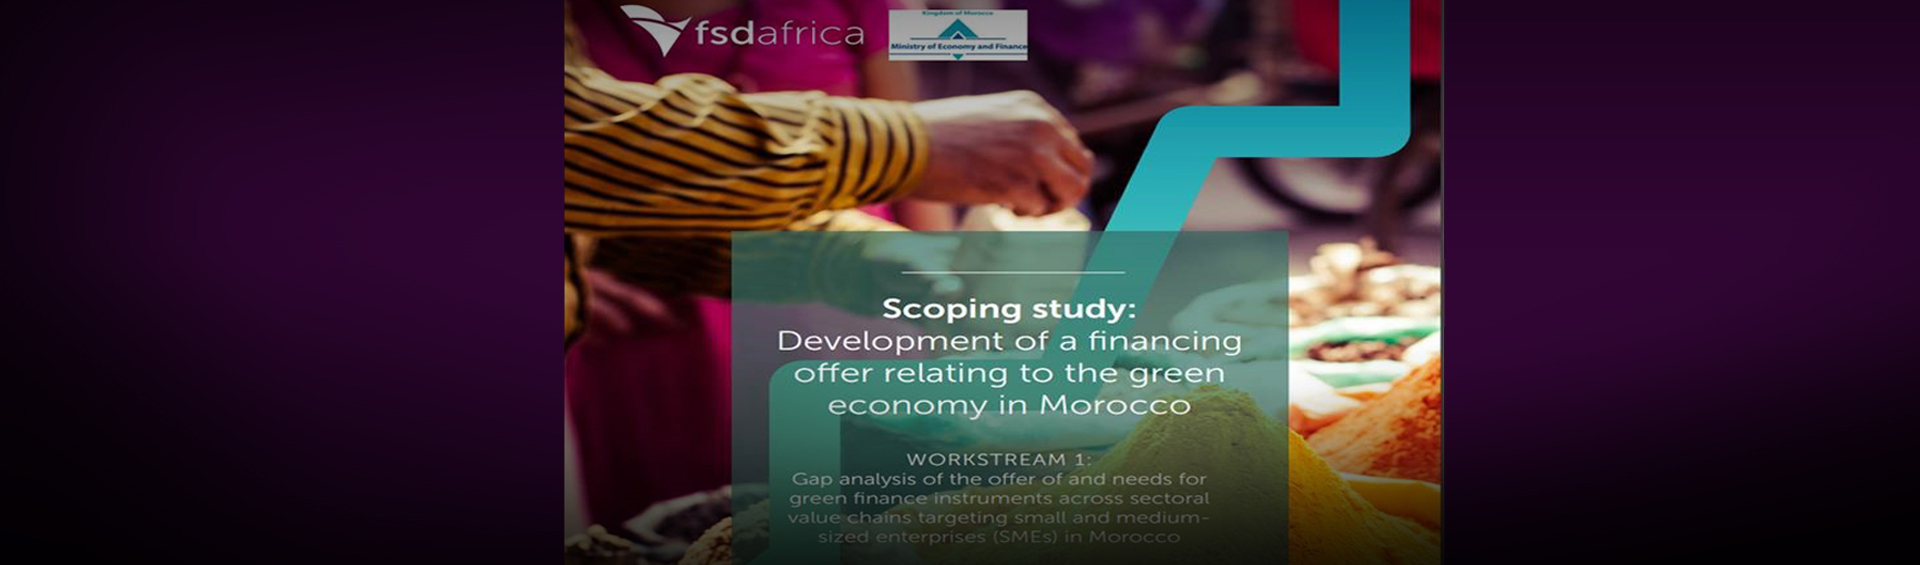 Le Ministère lance une nouvelle étude - en collaboration avec FSD Africa - explorant les options de financement pour les PME dans le cadre de l